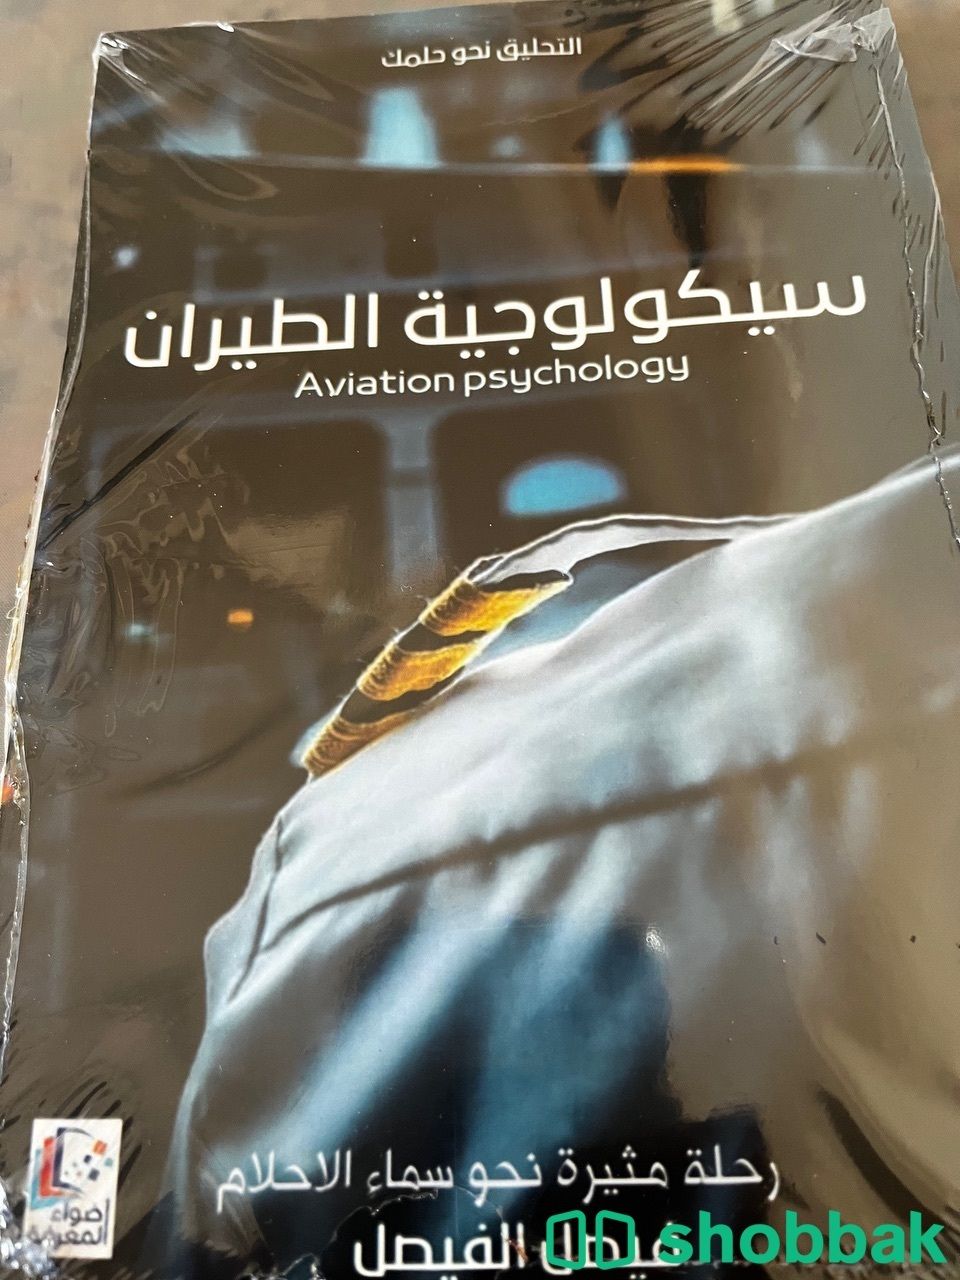 كتاب عن روايه مشوقه وجميله جدا شباك السعودية